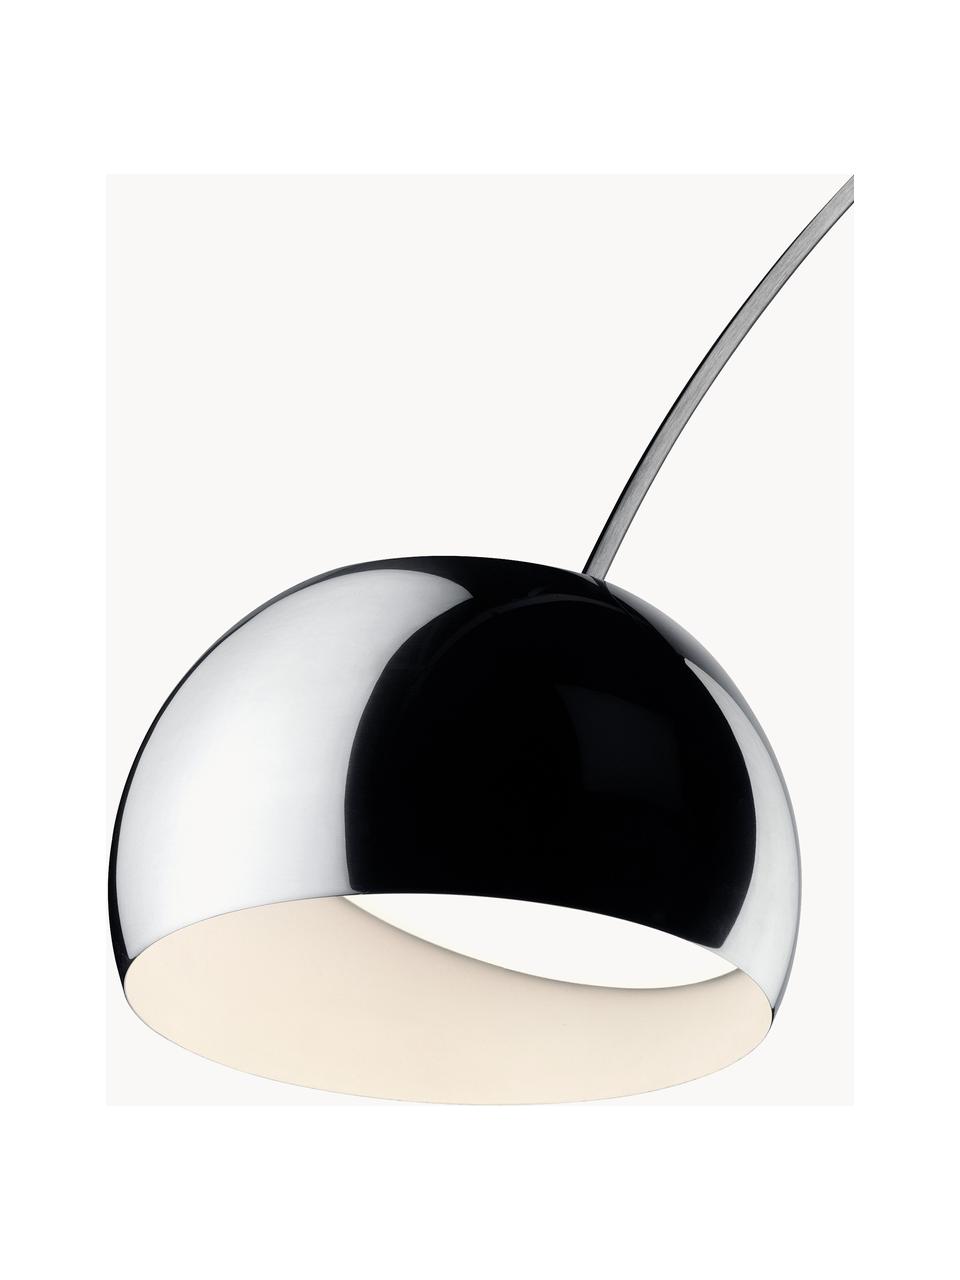 Grote booglamp Arco, Lampvoet: marmer, Zilverkleurig, wit, gemarmerd, H 240 x D 220 cm